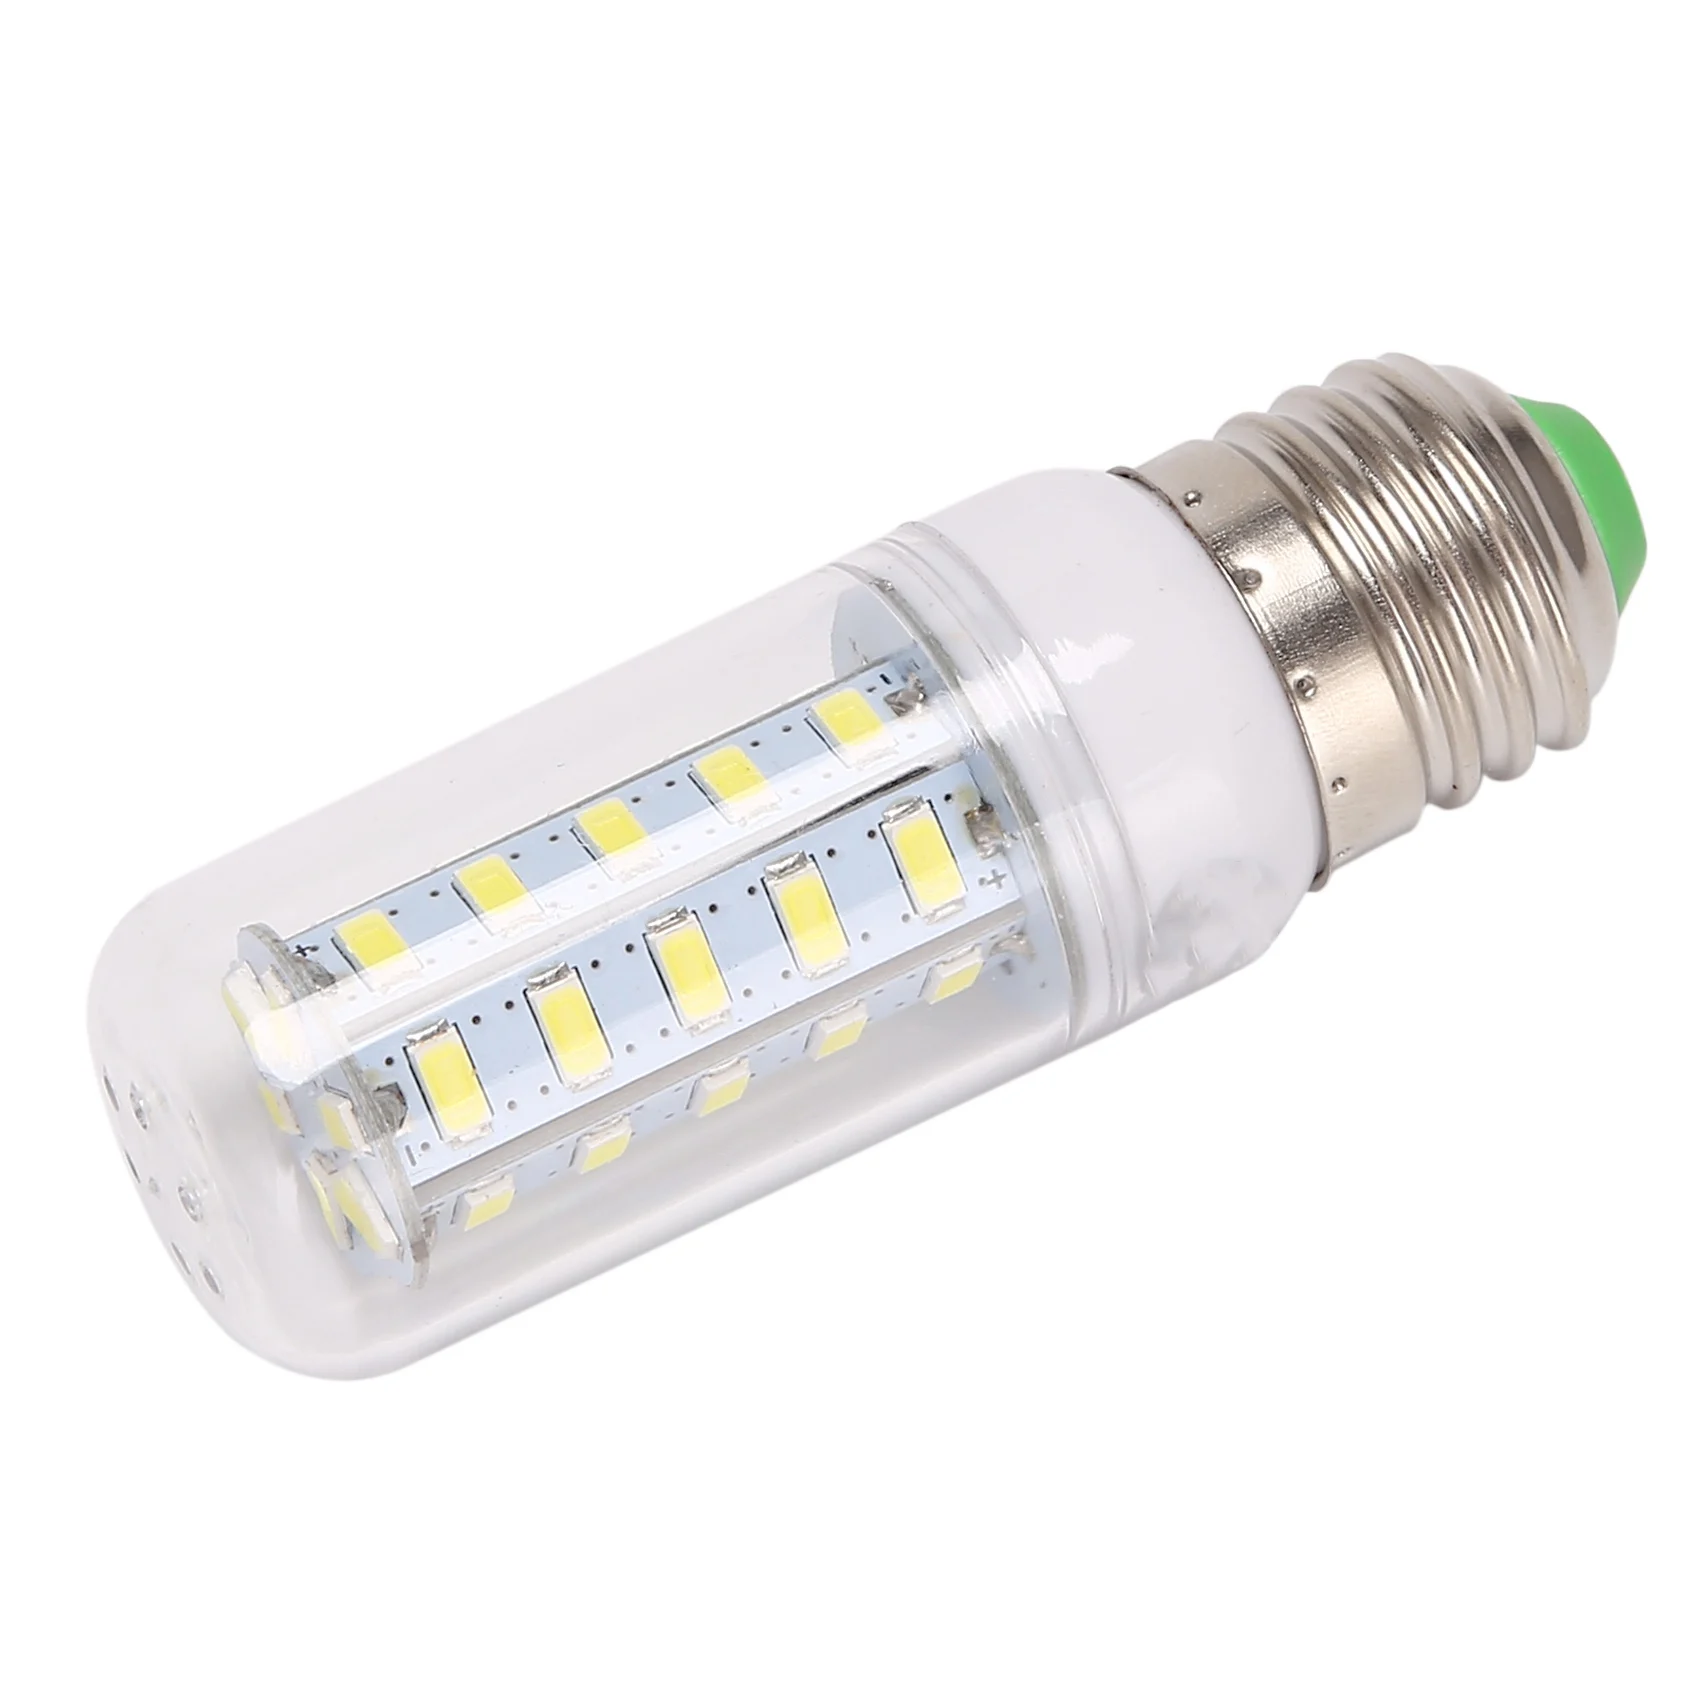 

E27 LED Corn Bulb LED Light Bulb White Light 36 LEDs 5730 6W Home Light Candle Base Corn Lamp LED Lamp